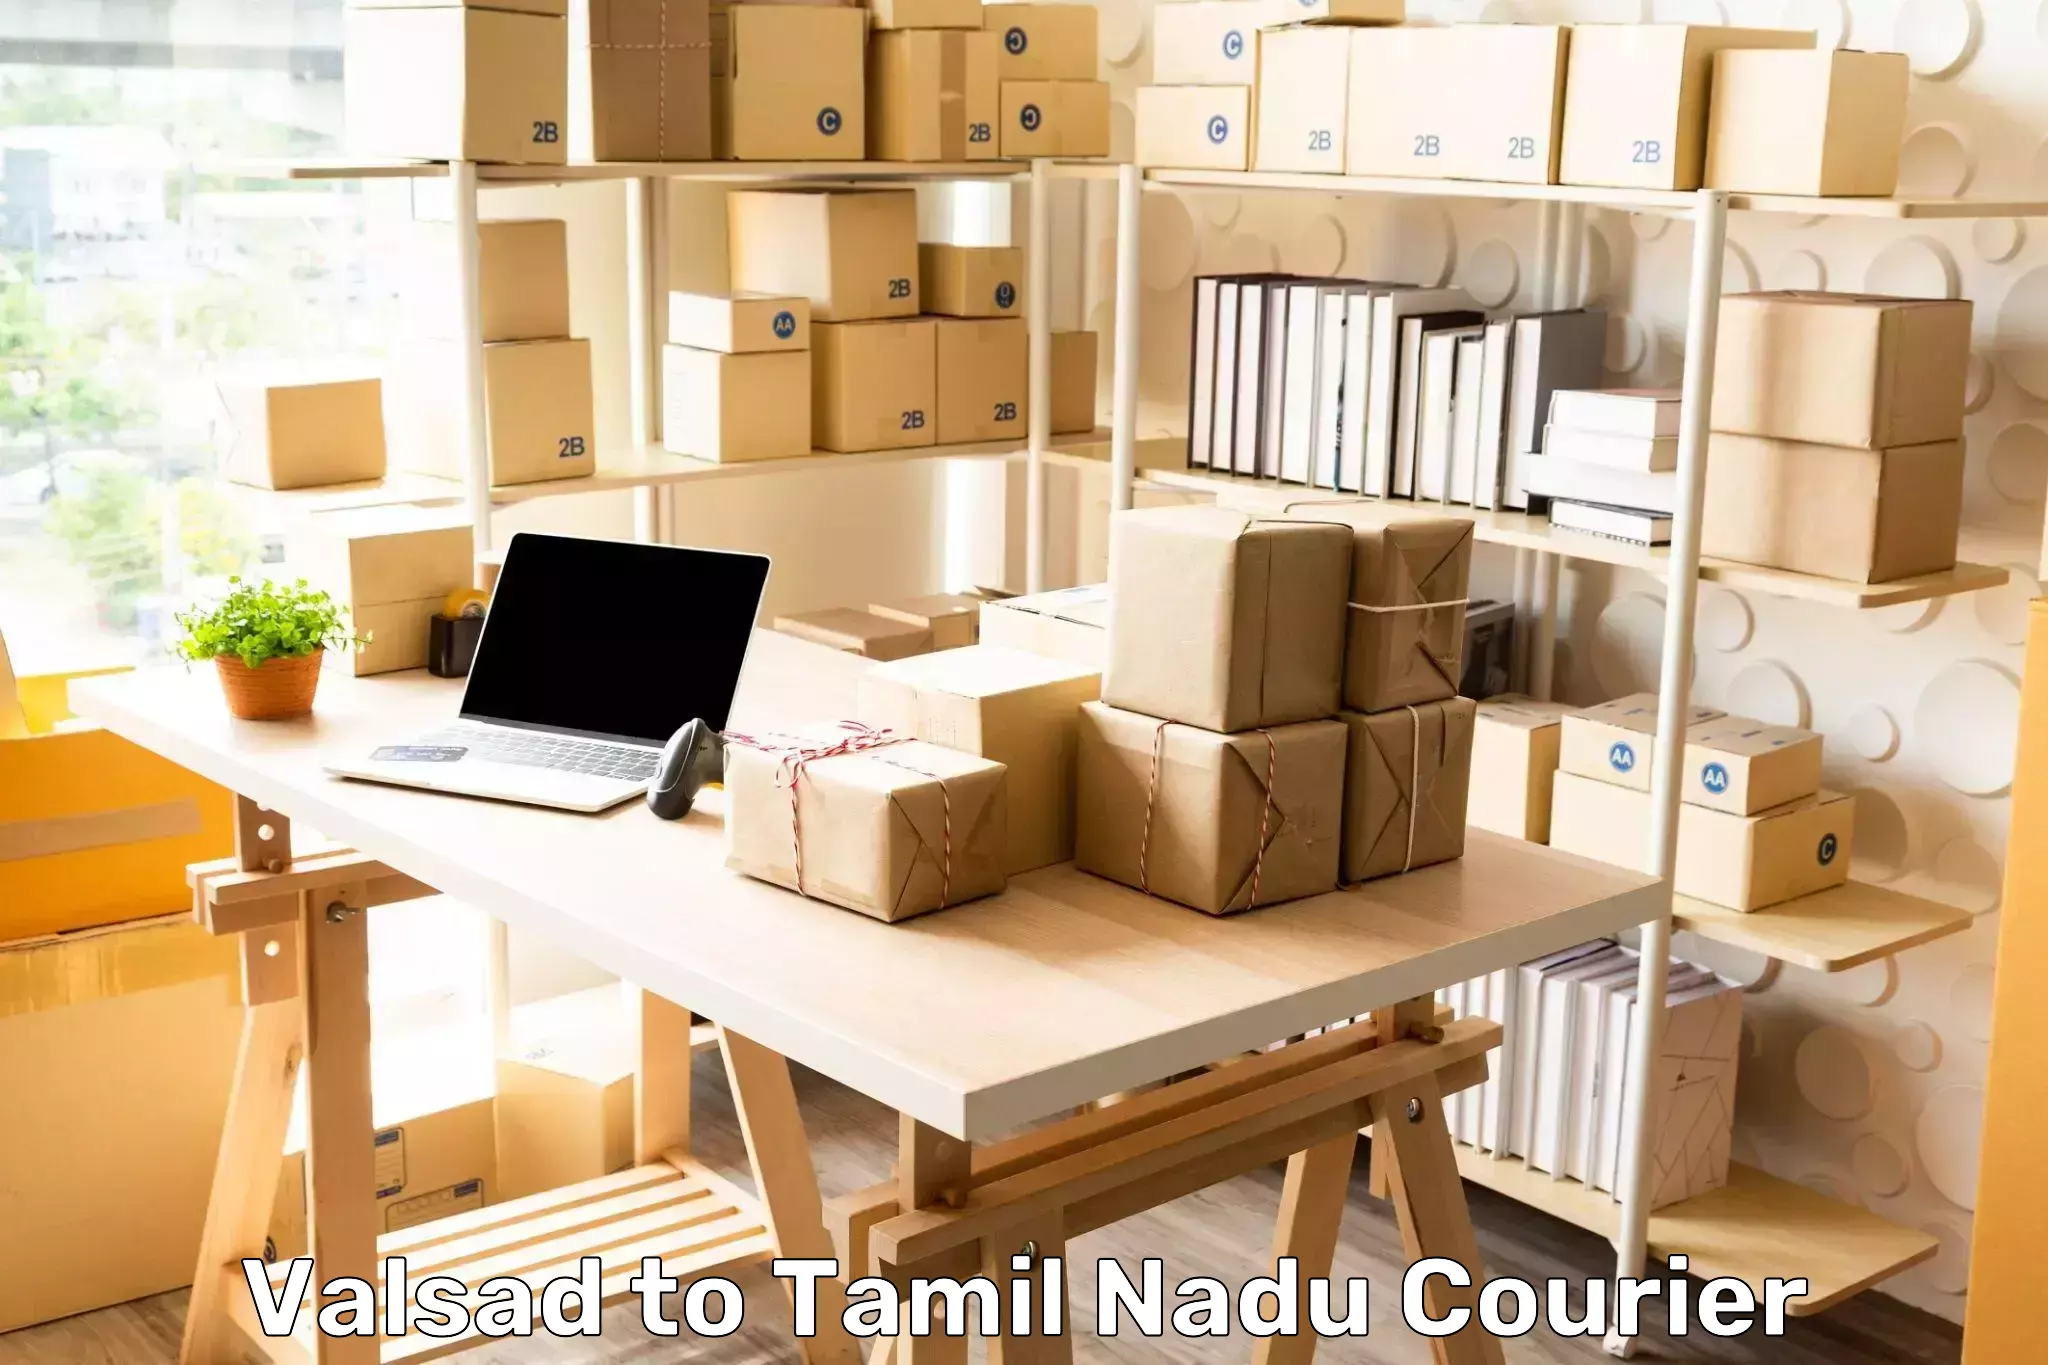 Nationwide parcel services Valsad to Tamil Nadu